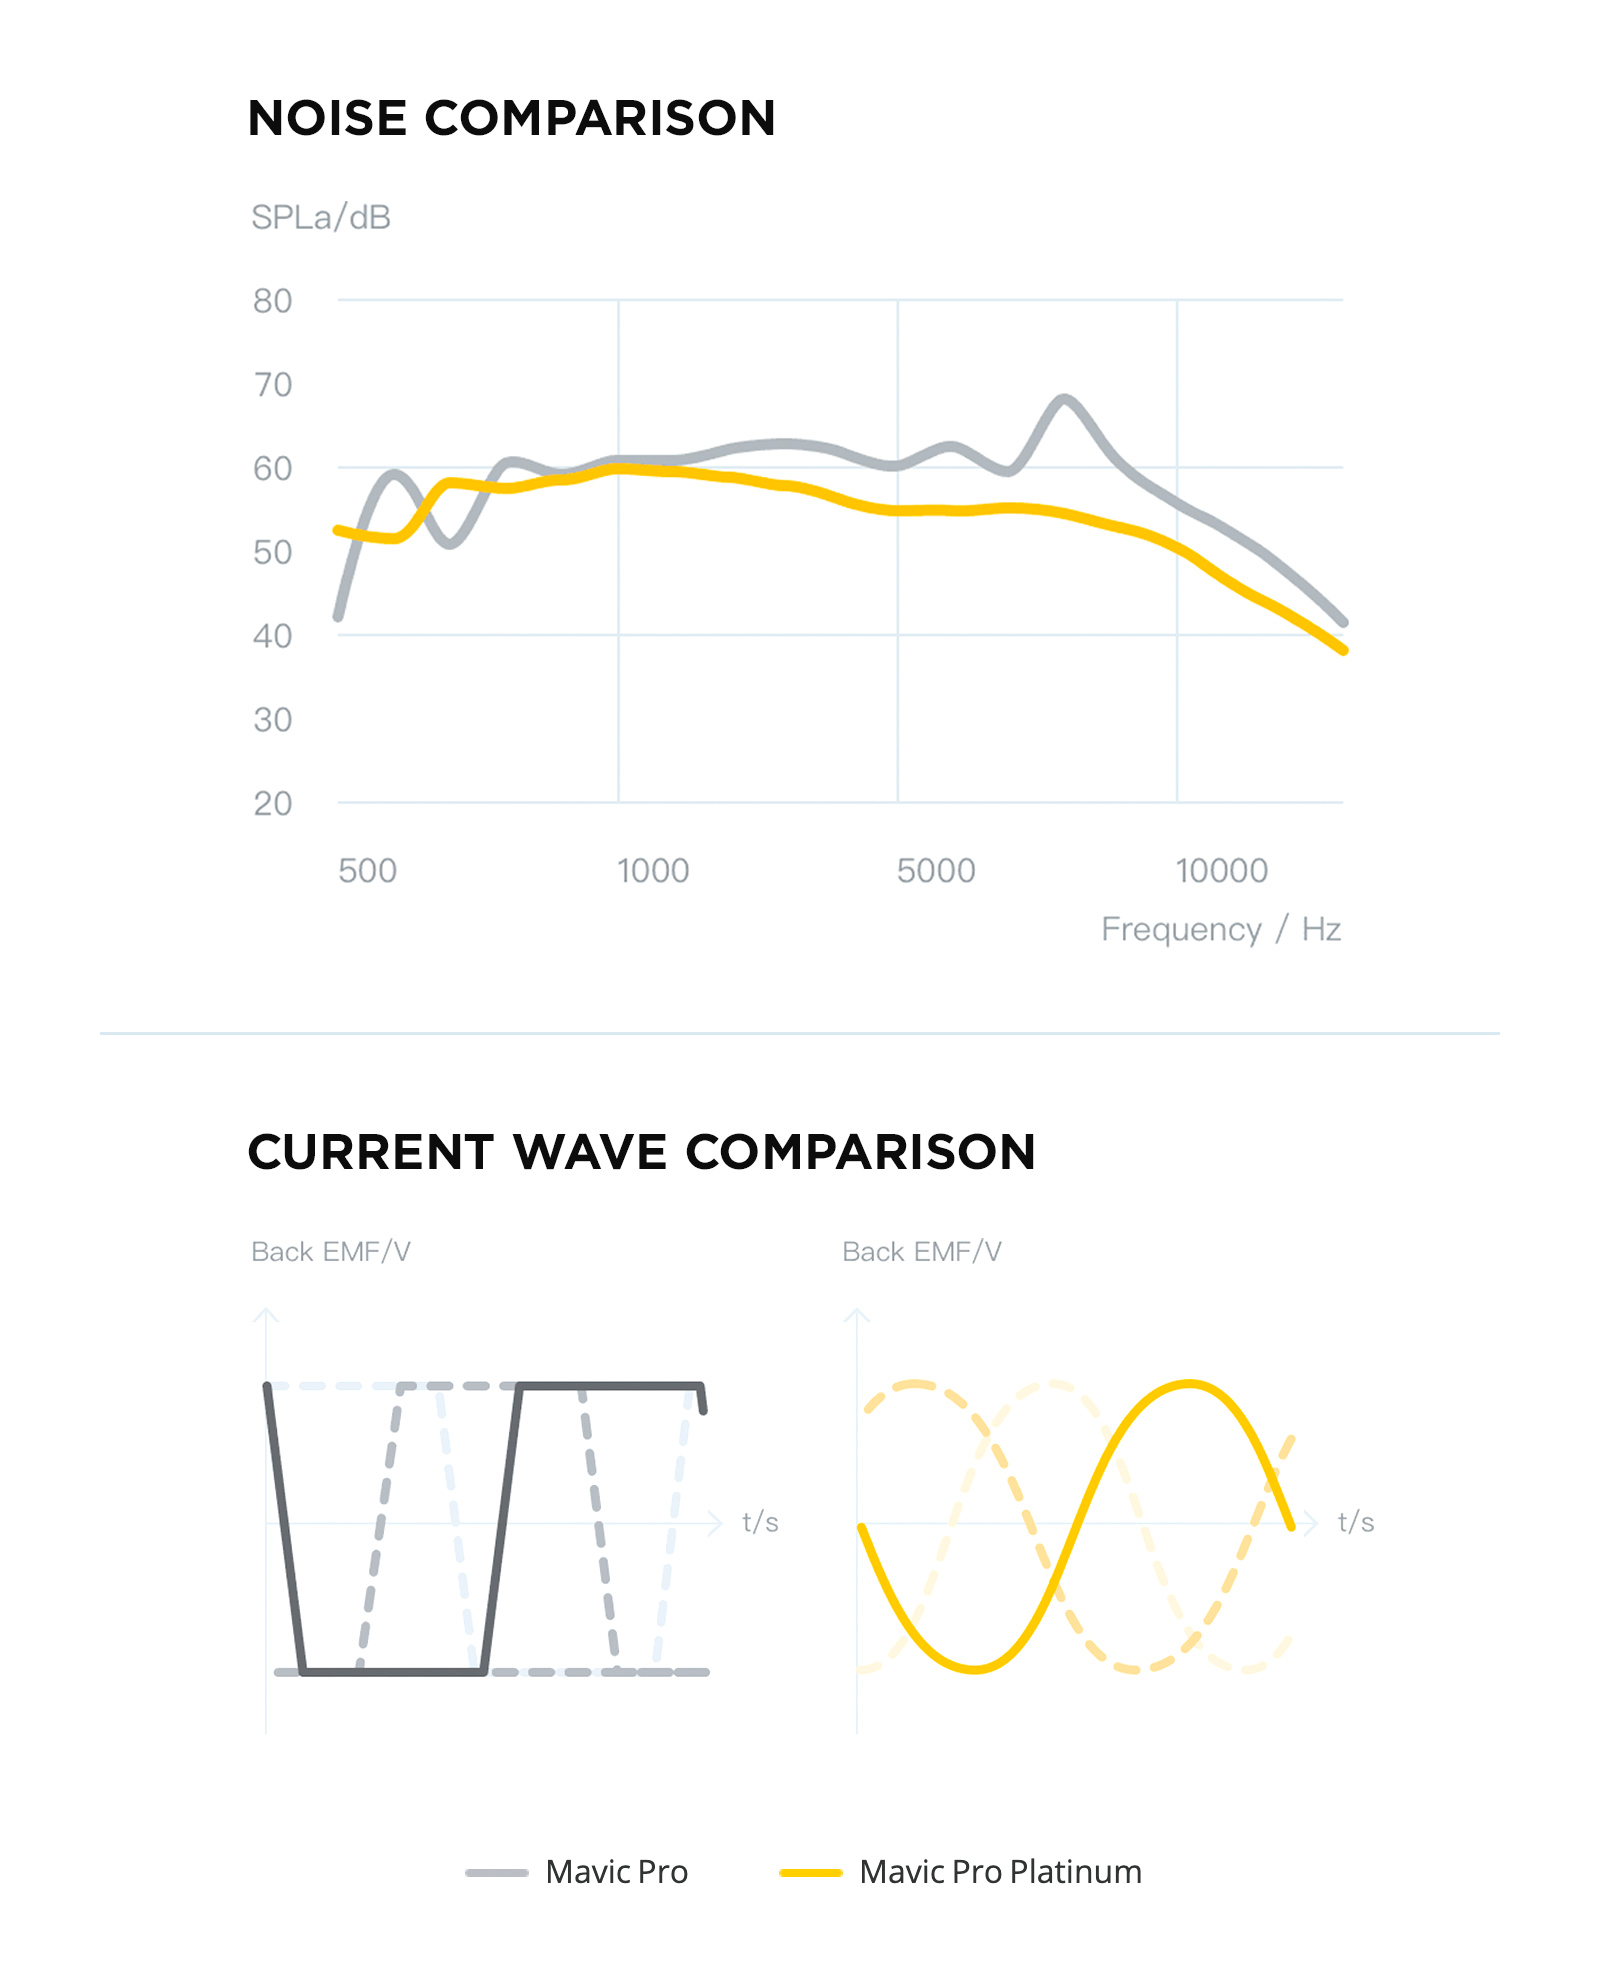 Grafico de comparación de ruido y comparación de onda 